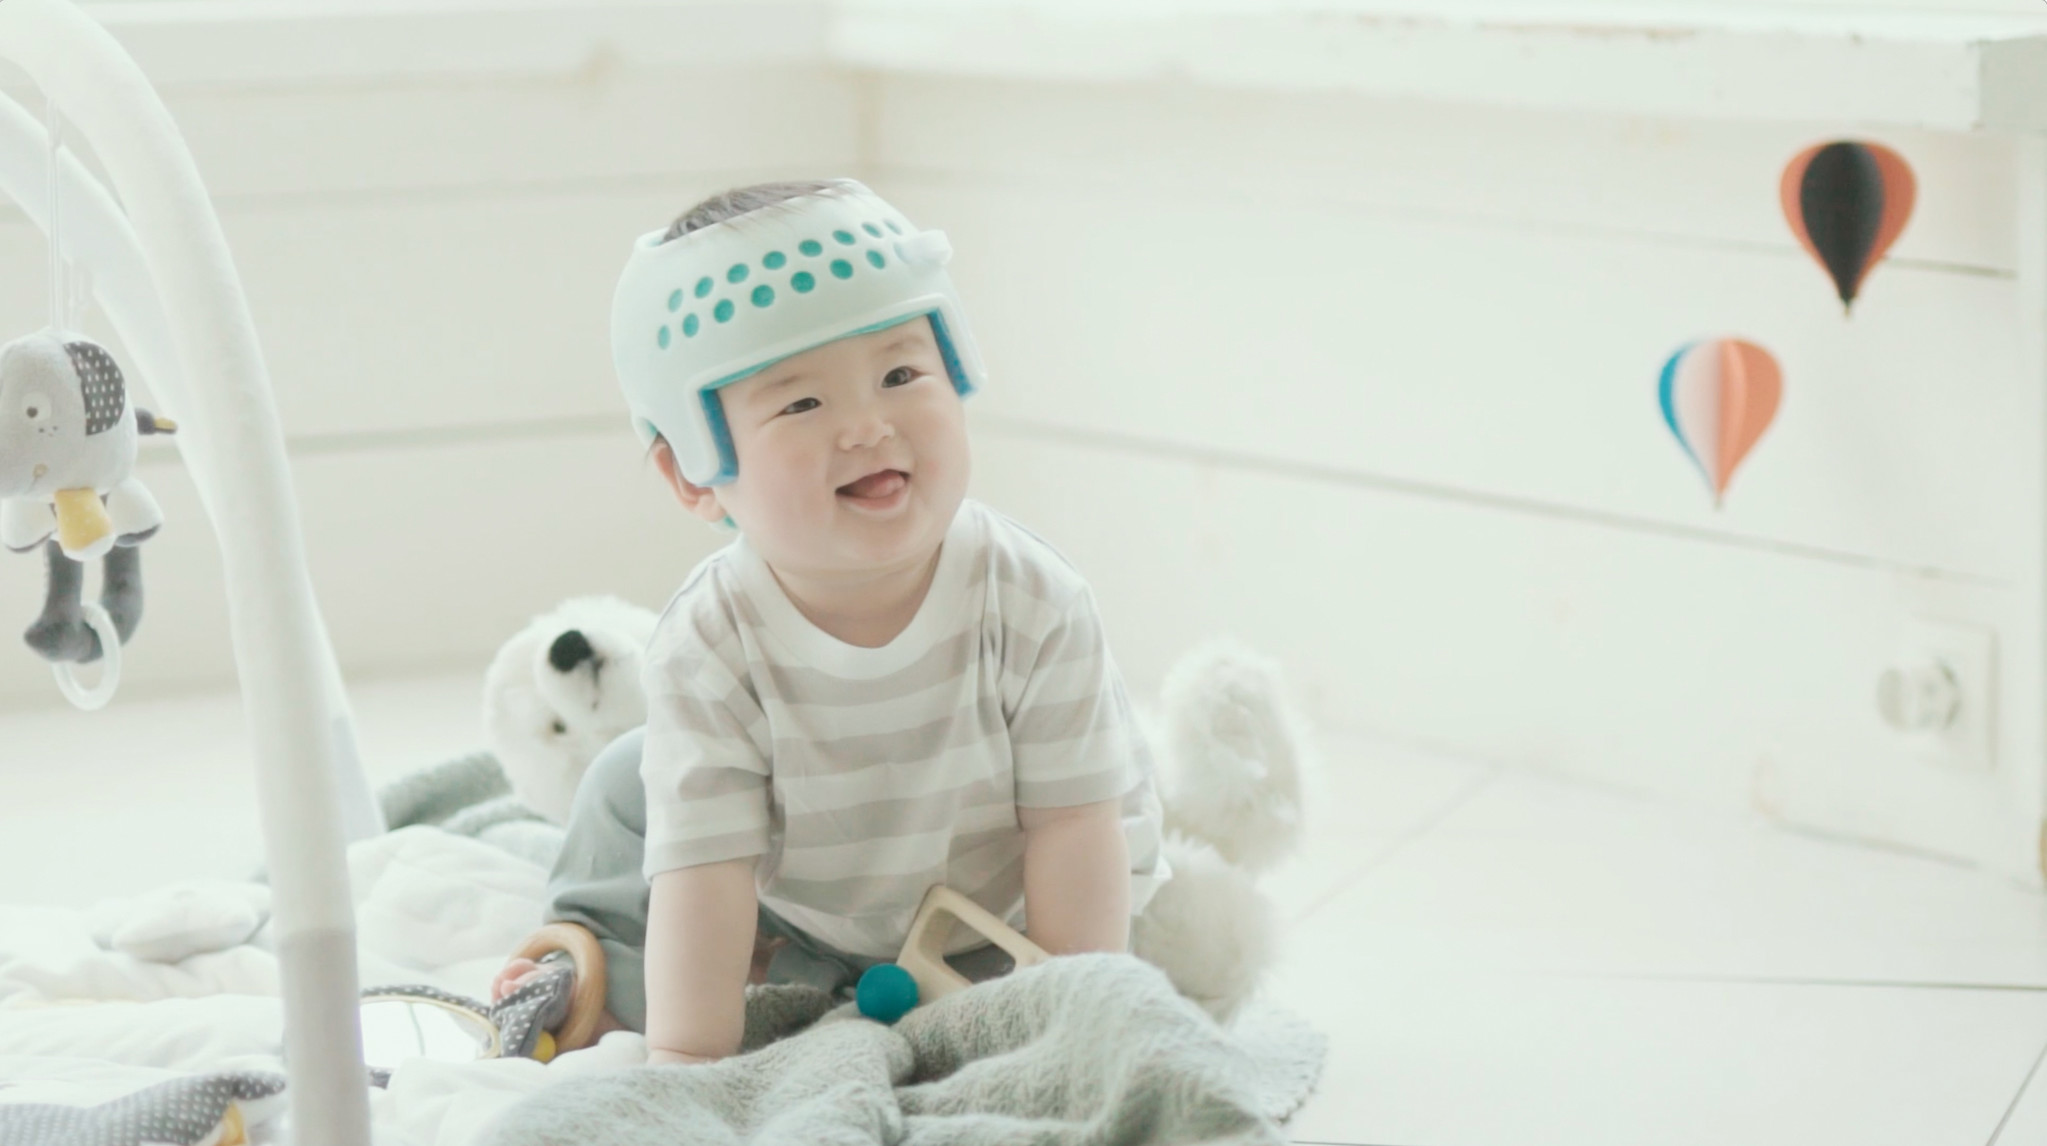 赤ちゃんの 頭のゆがみ を矯正するヘルメット アイメット が19年度グッドデザイン賞受賞 株式会社ジャパン メディカル カンパニーのプレスリリース